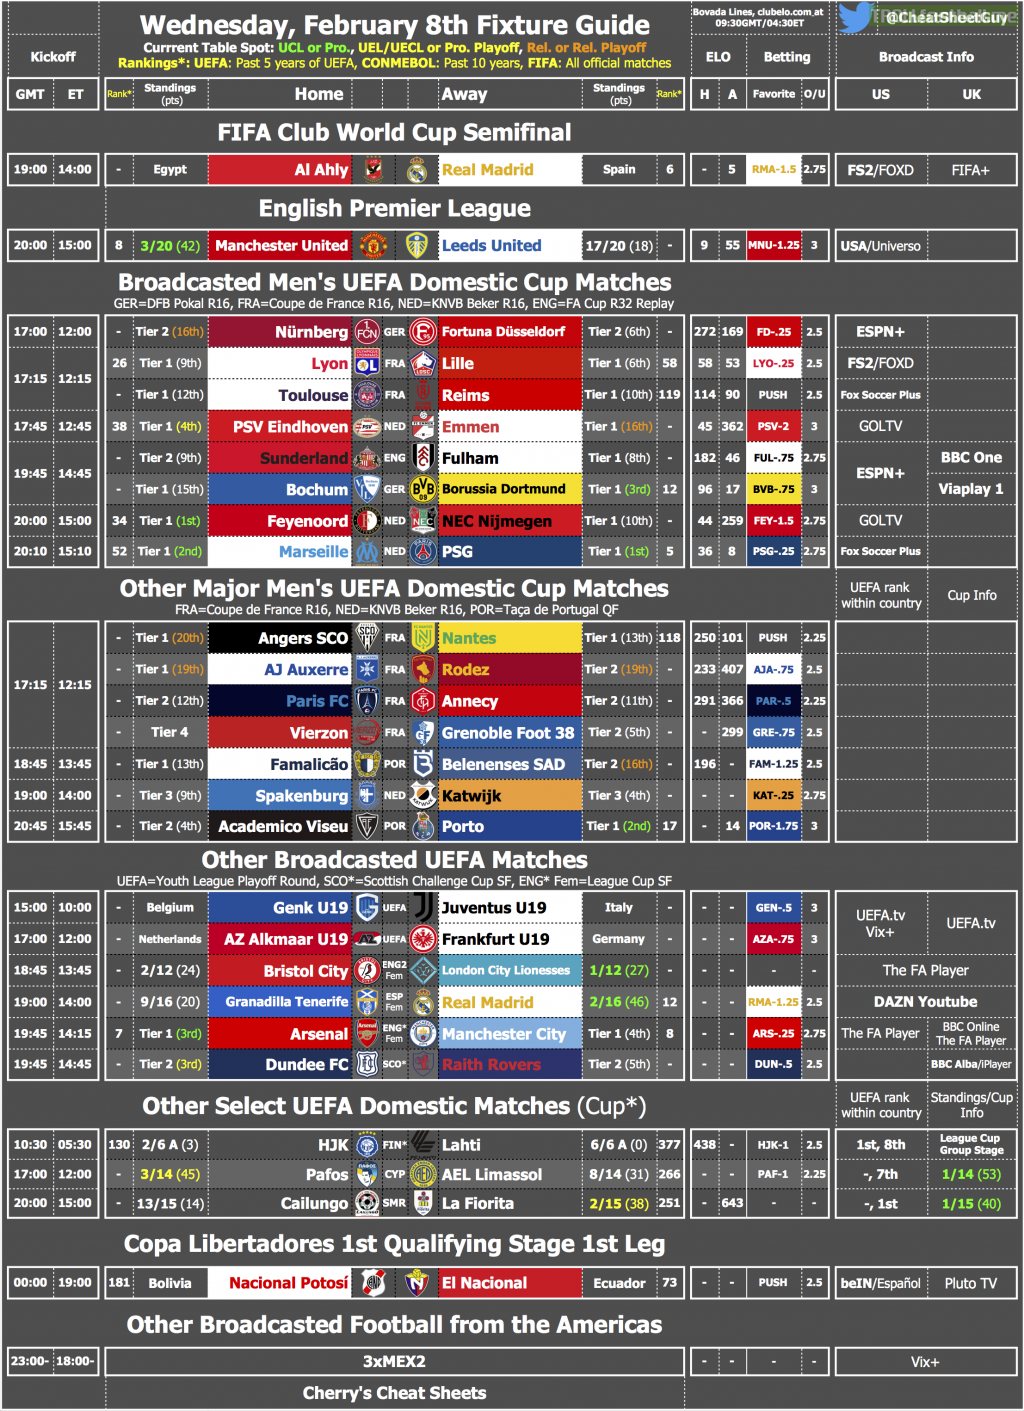 Wednesday's Fixture & TV Cheat Sheet [OC]